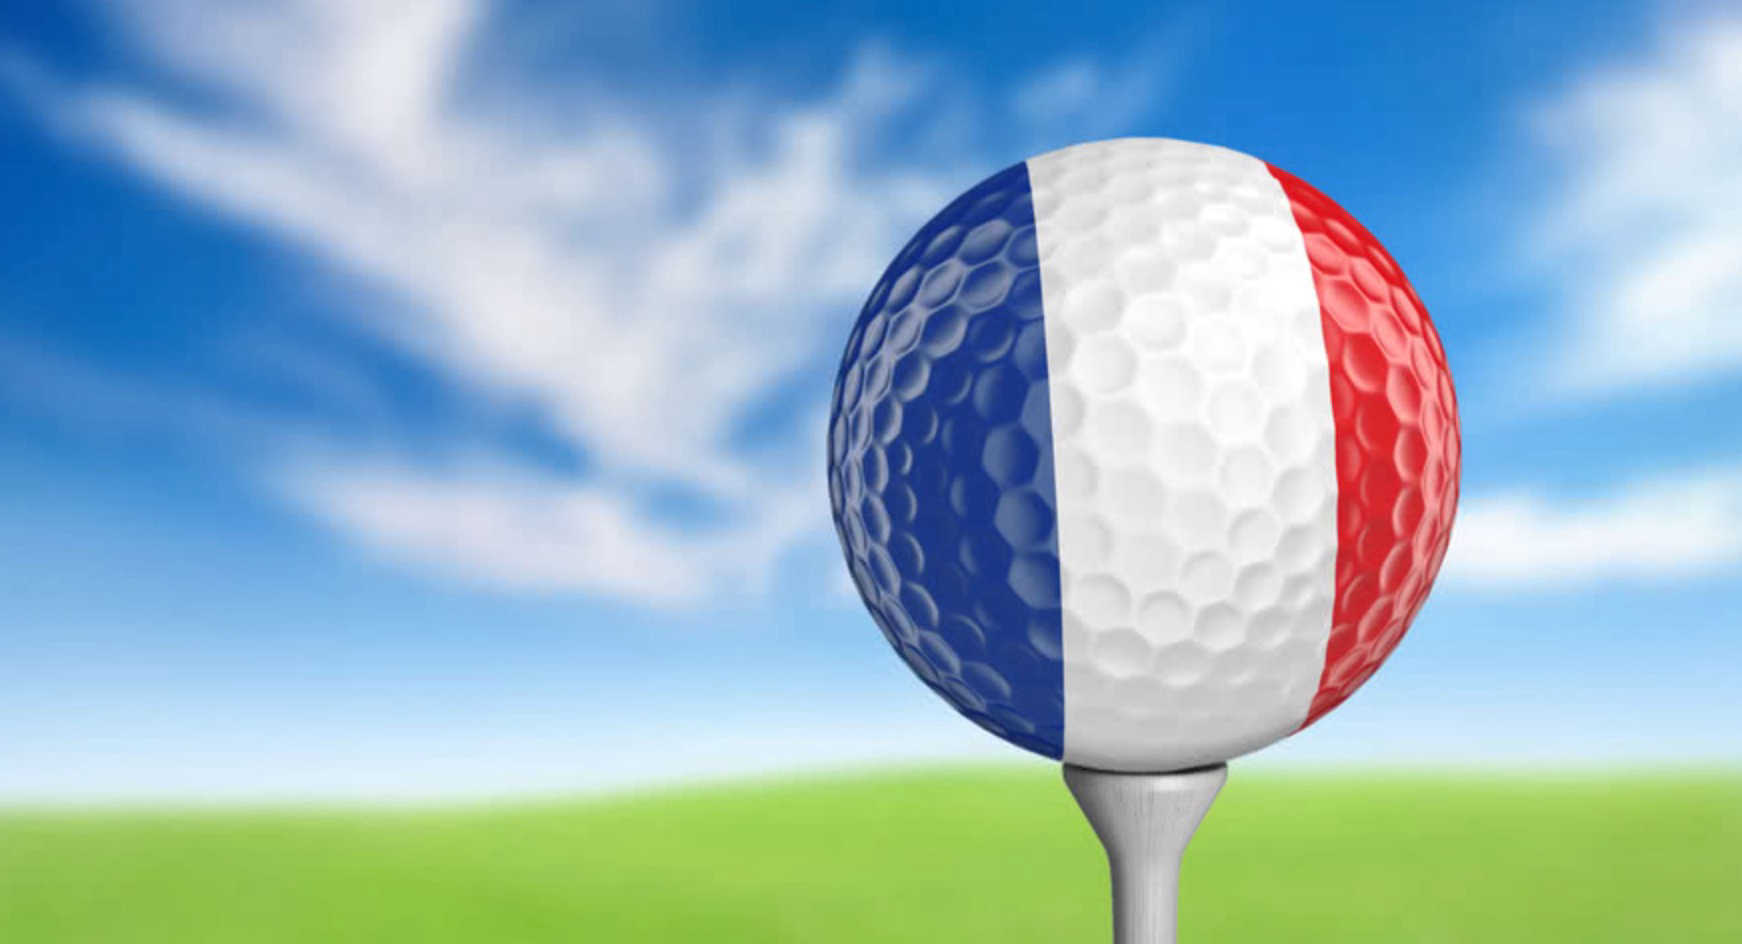 Fédération Française de Golf compétitions